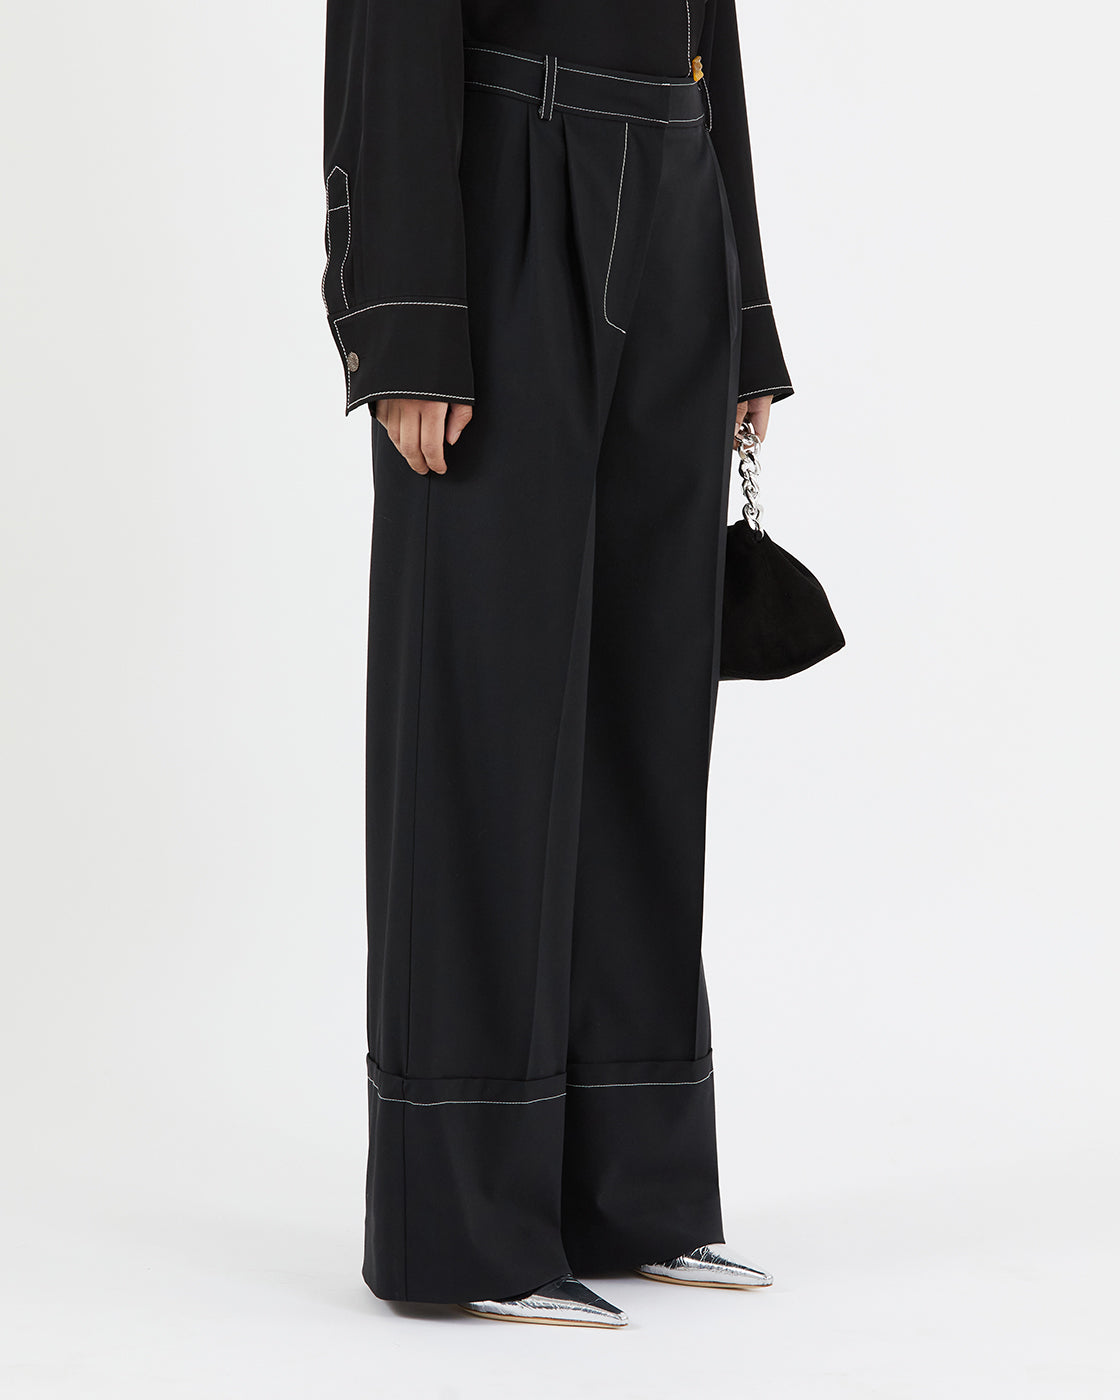 Macie Trousers Wool Blend Suiting Black